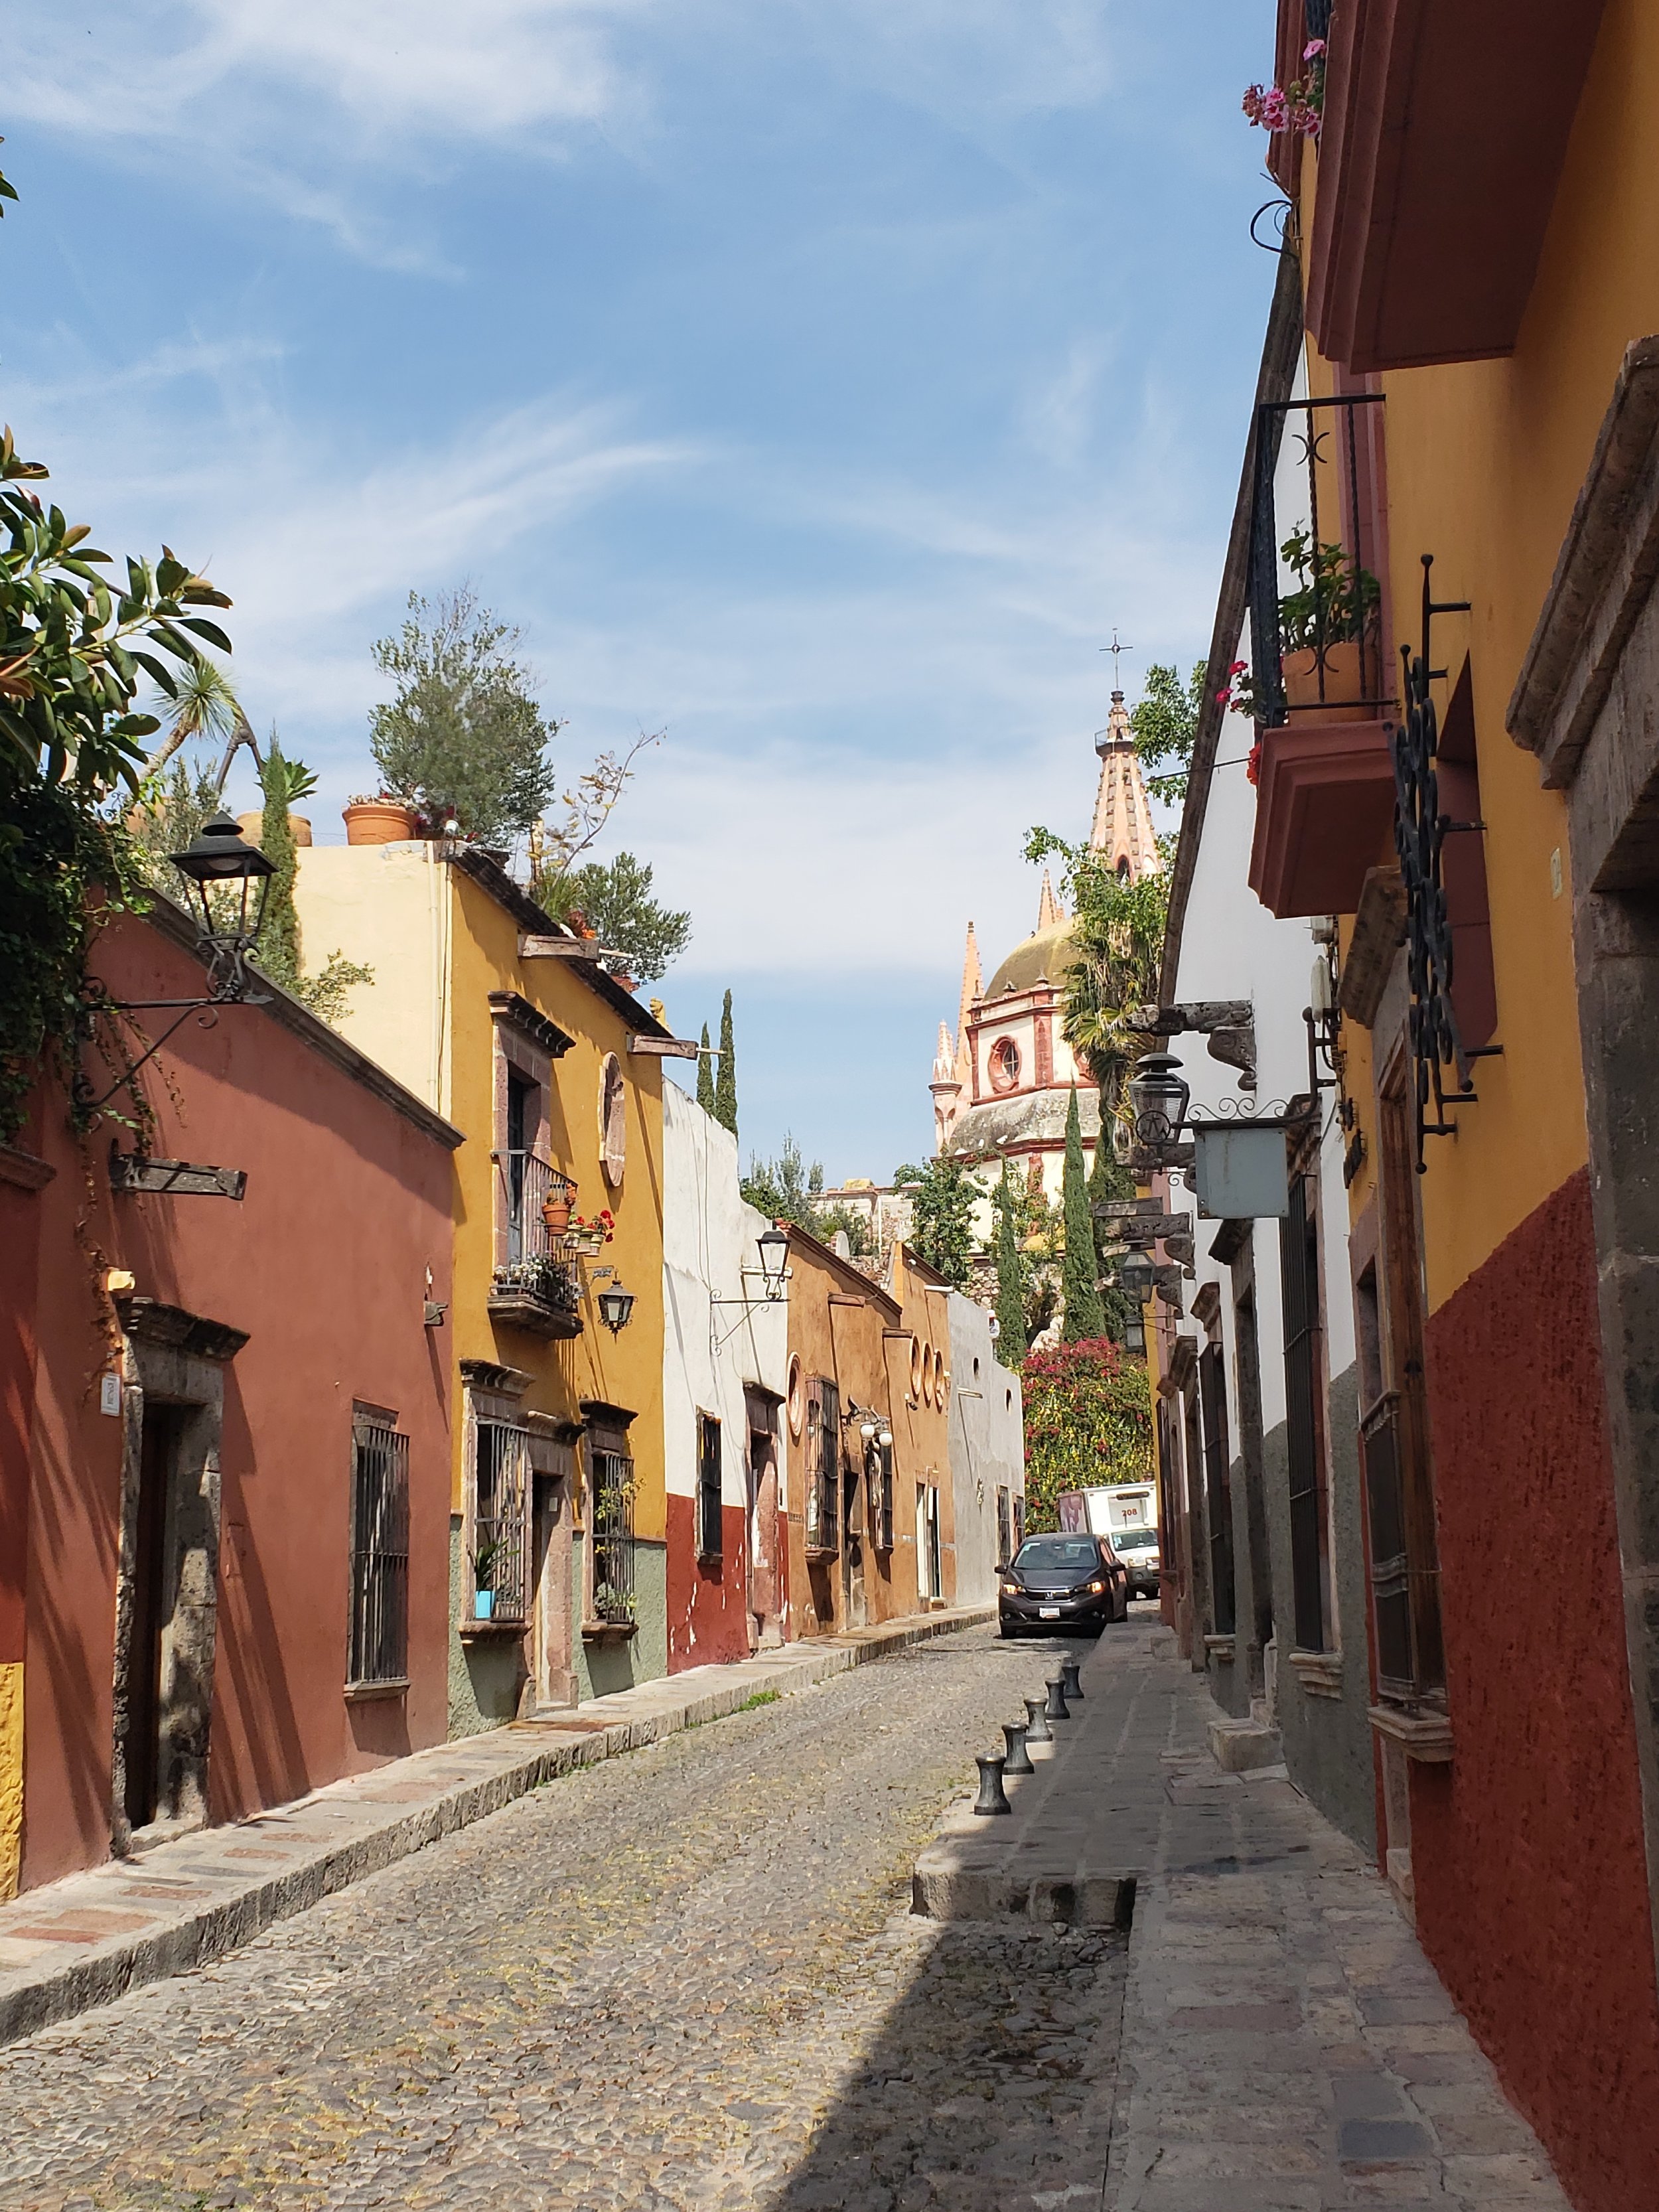 Street scene in San Miguel